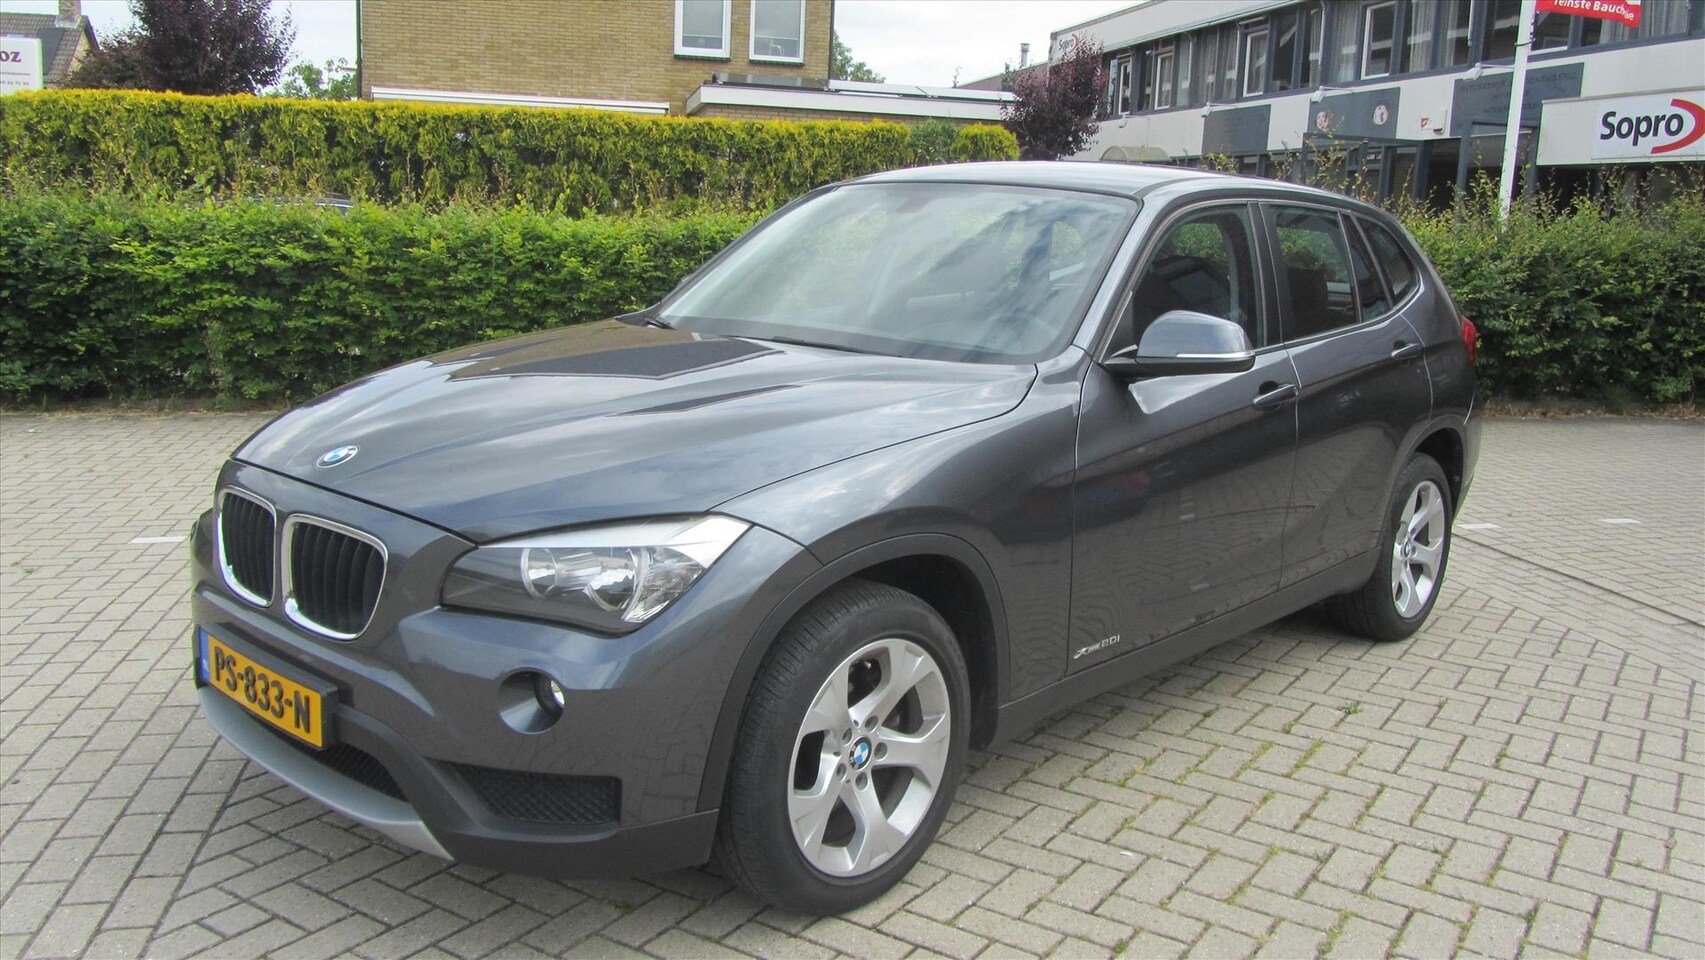 BMW X1 - xdrive 2.0i ZEER LAGE KM STAND 36257 - AutoWereld.nl